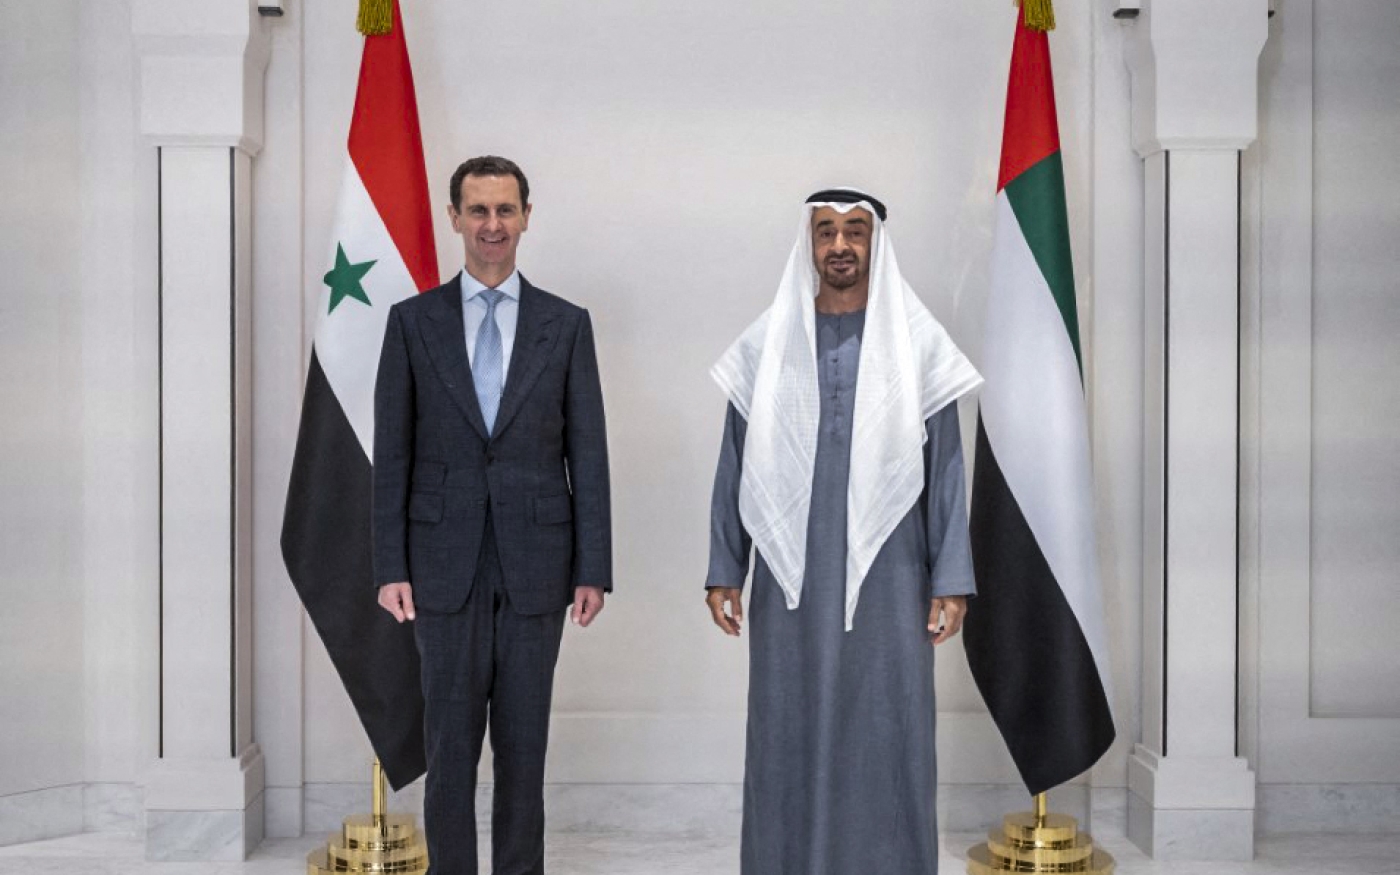 Le président syrien Bachar al-Assad est accueilli à Abou Dabi par le prince héritier Mohammed ben Zayed, le 18 mars 2021 (WAM/AFP)